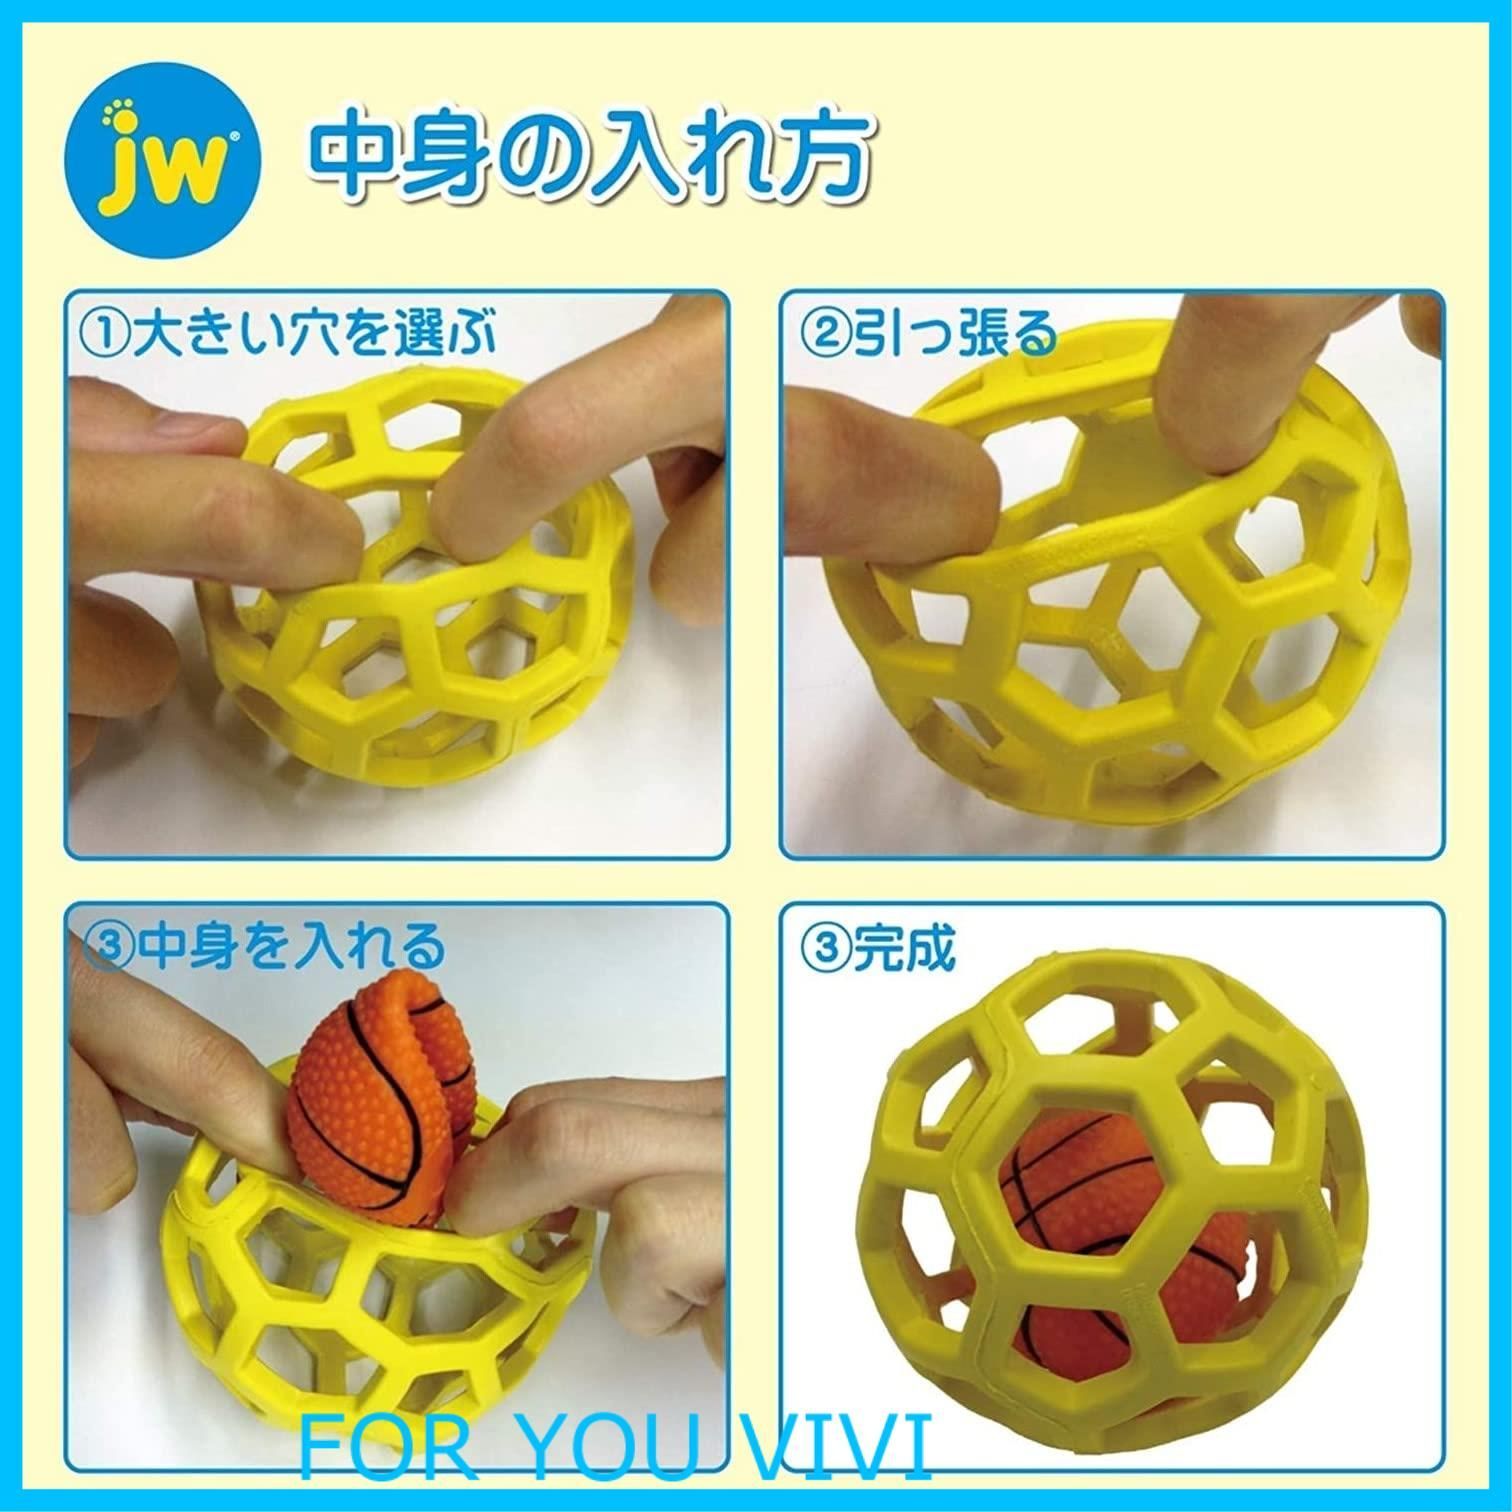 JW Pet(JWペット) 犬用おもちゃ 中型犬 ホーリーローラーボール Sサイズ オレンジ